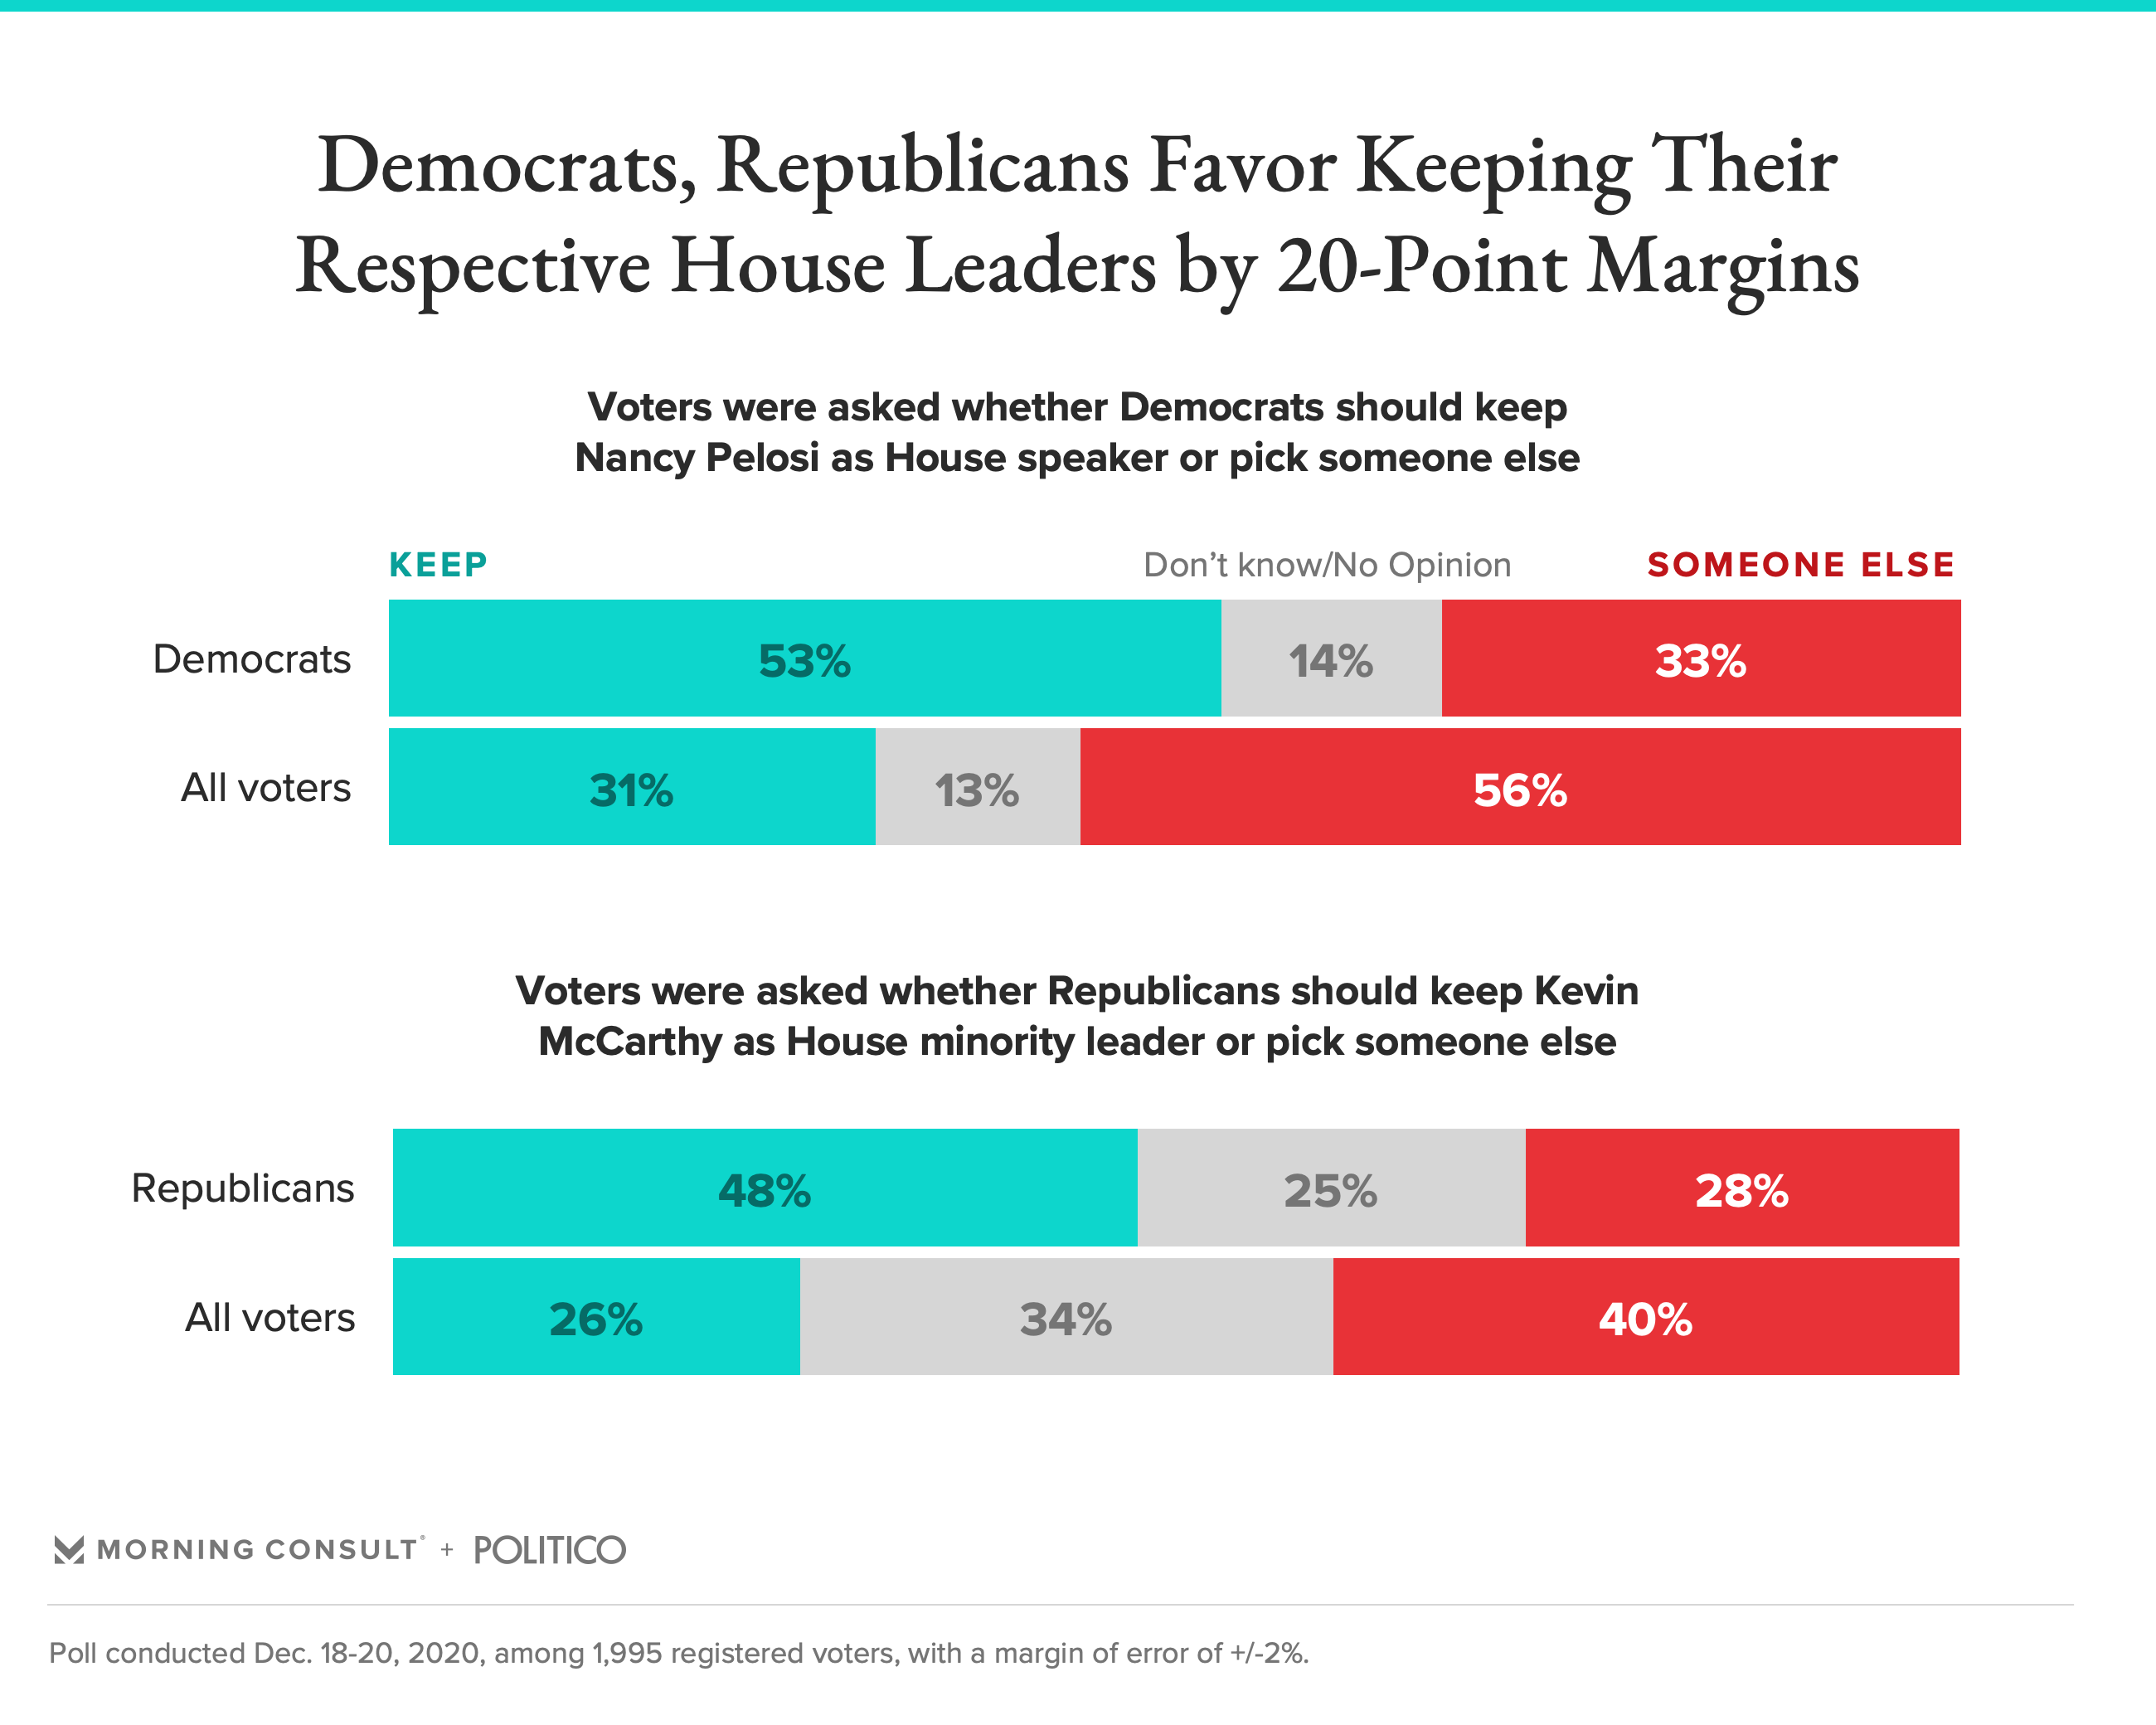 Slim Majority of Democratic Voters Favor Keeping Pelosi as Speaker